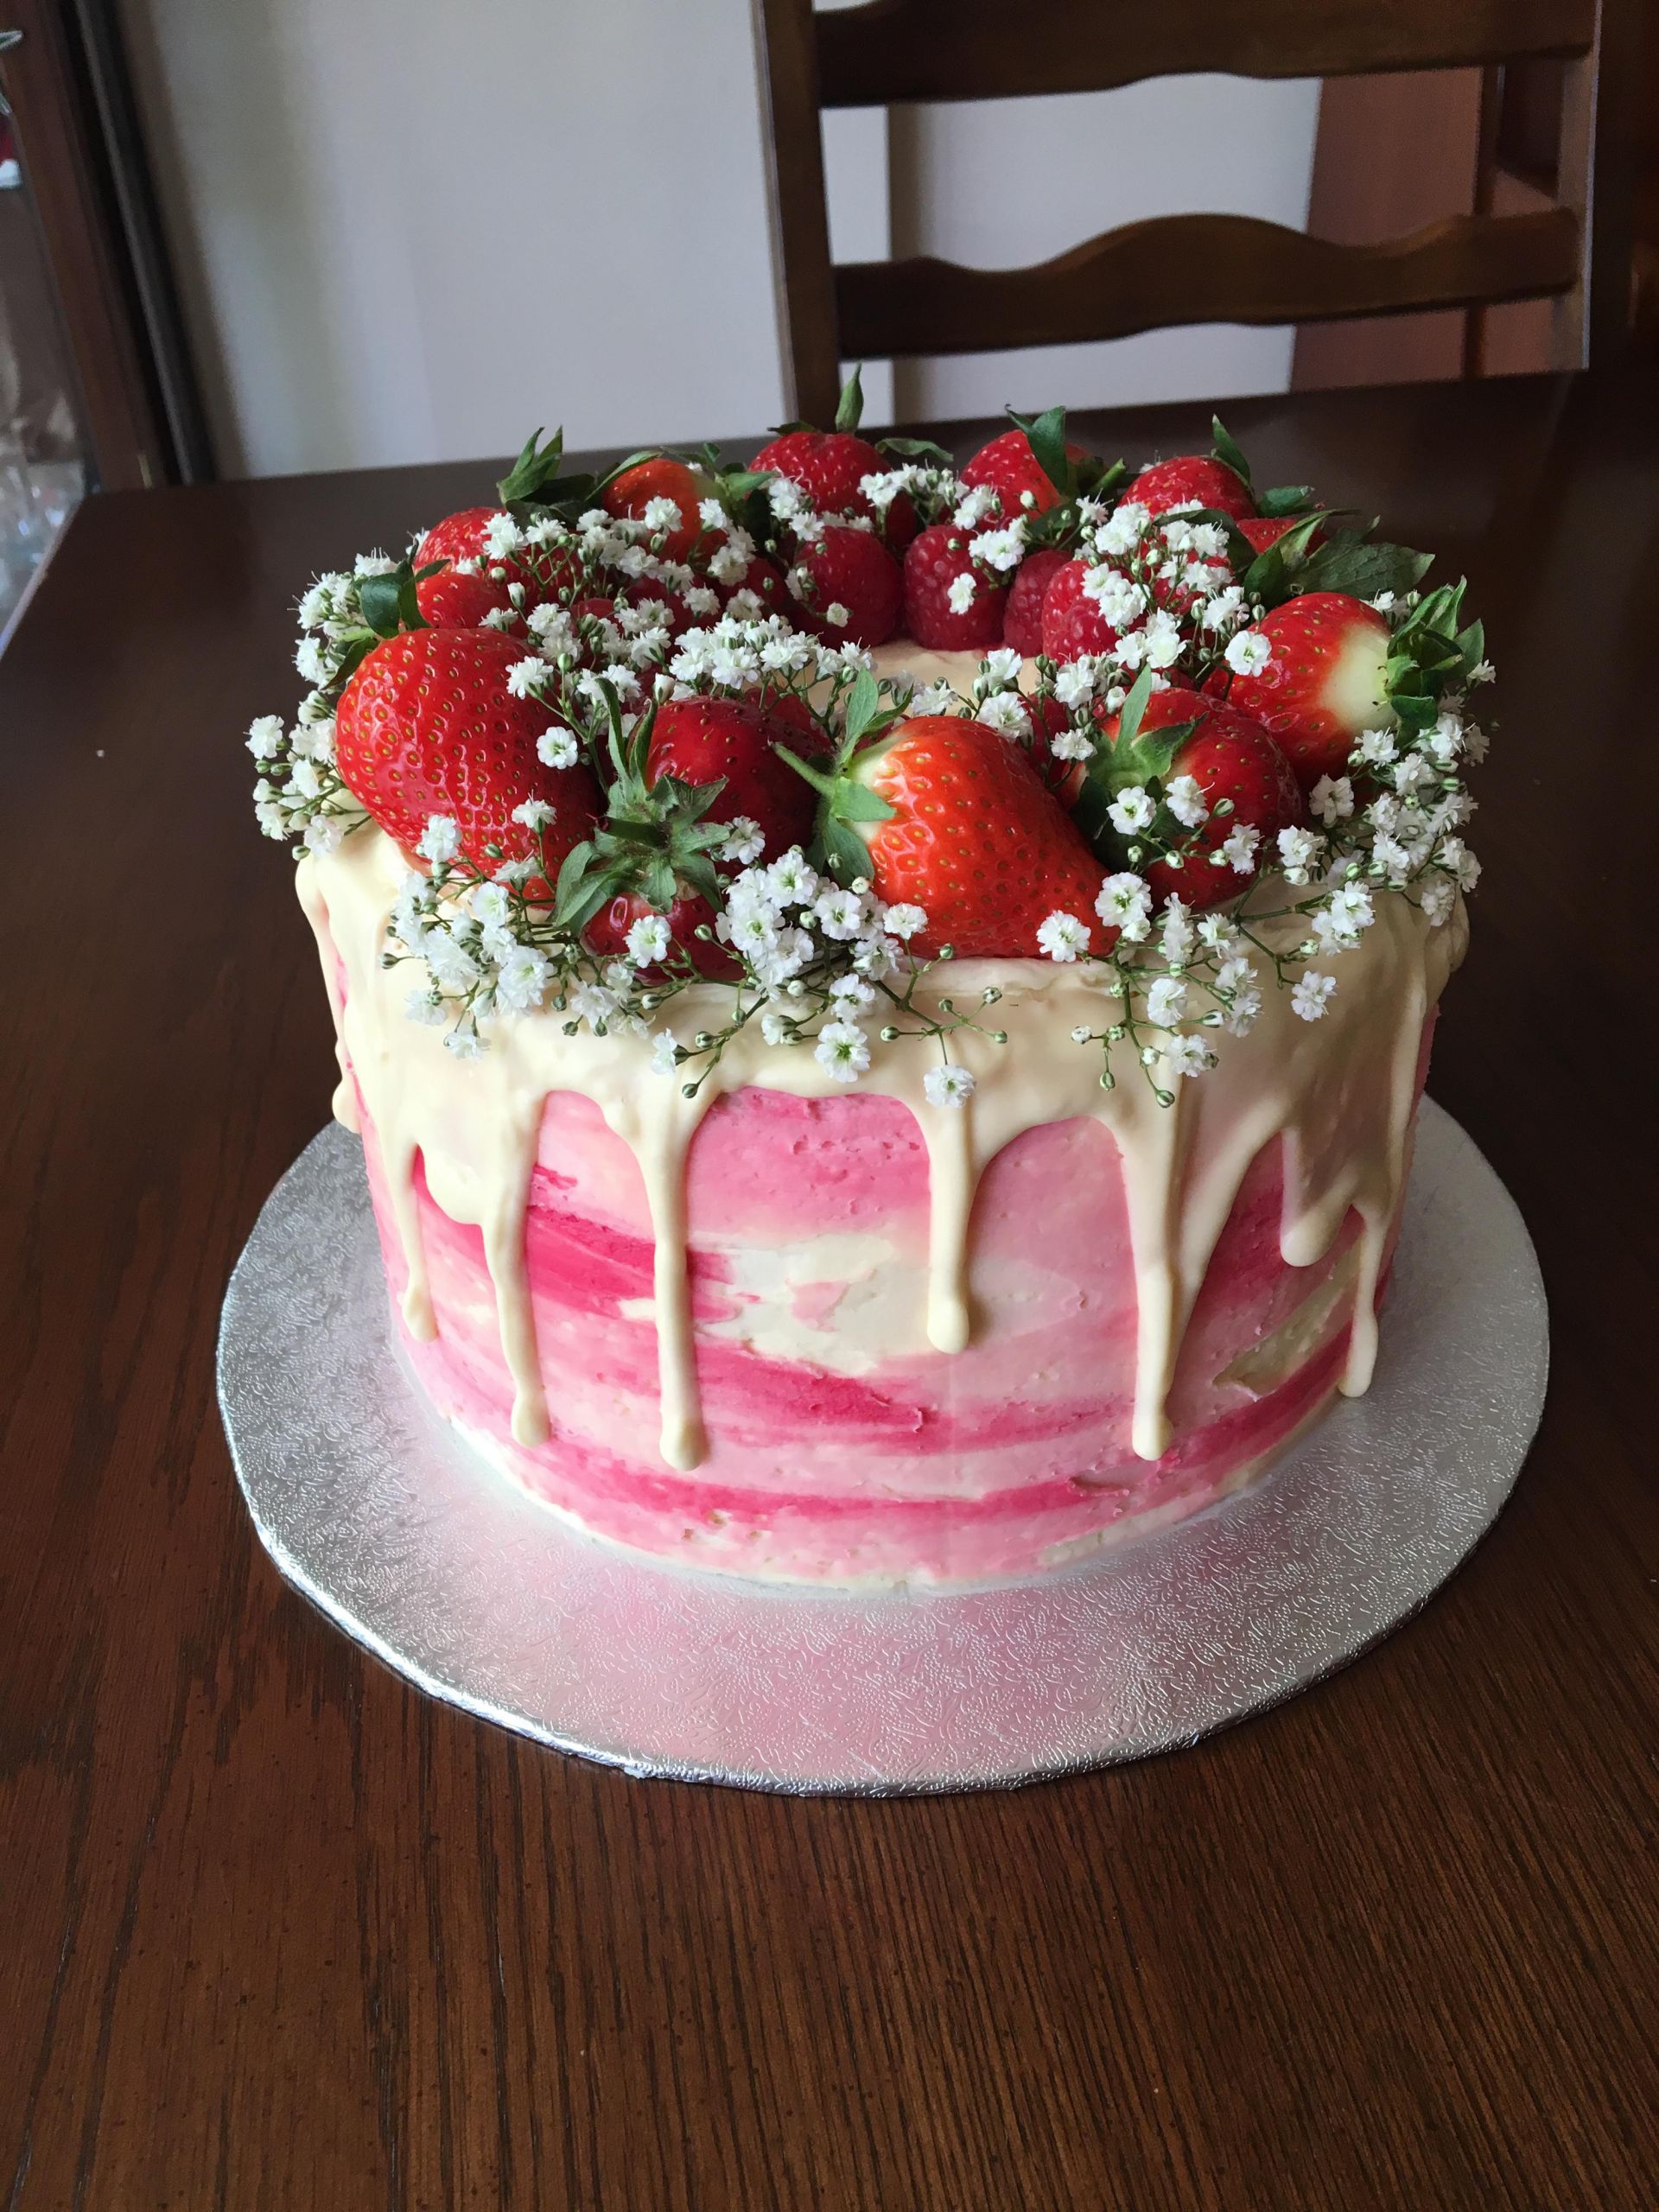 Strawberry Birthday Cakes
 Strawberry white chocolate drip birthday cake Baking